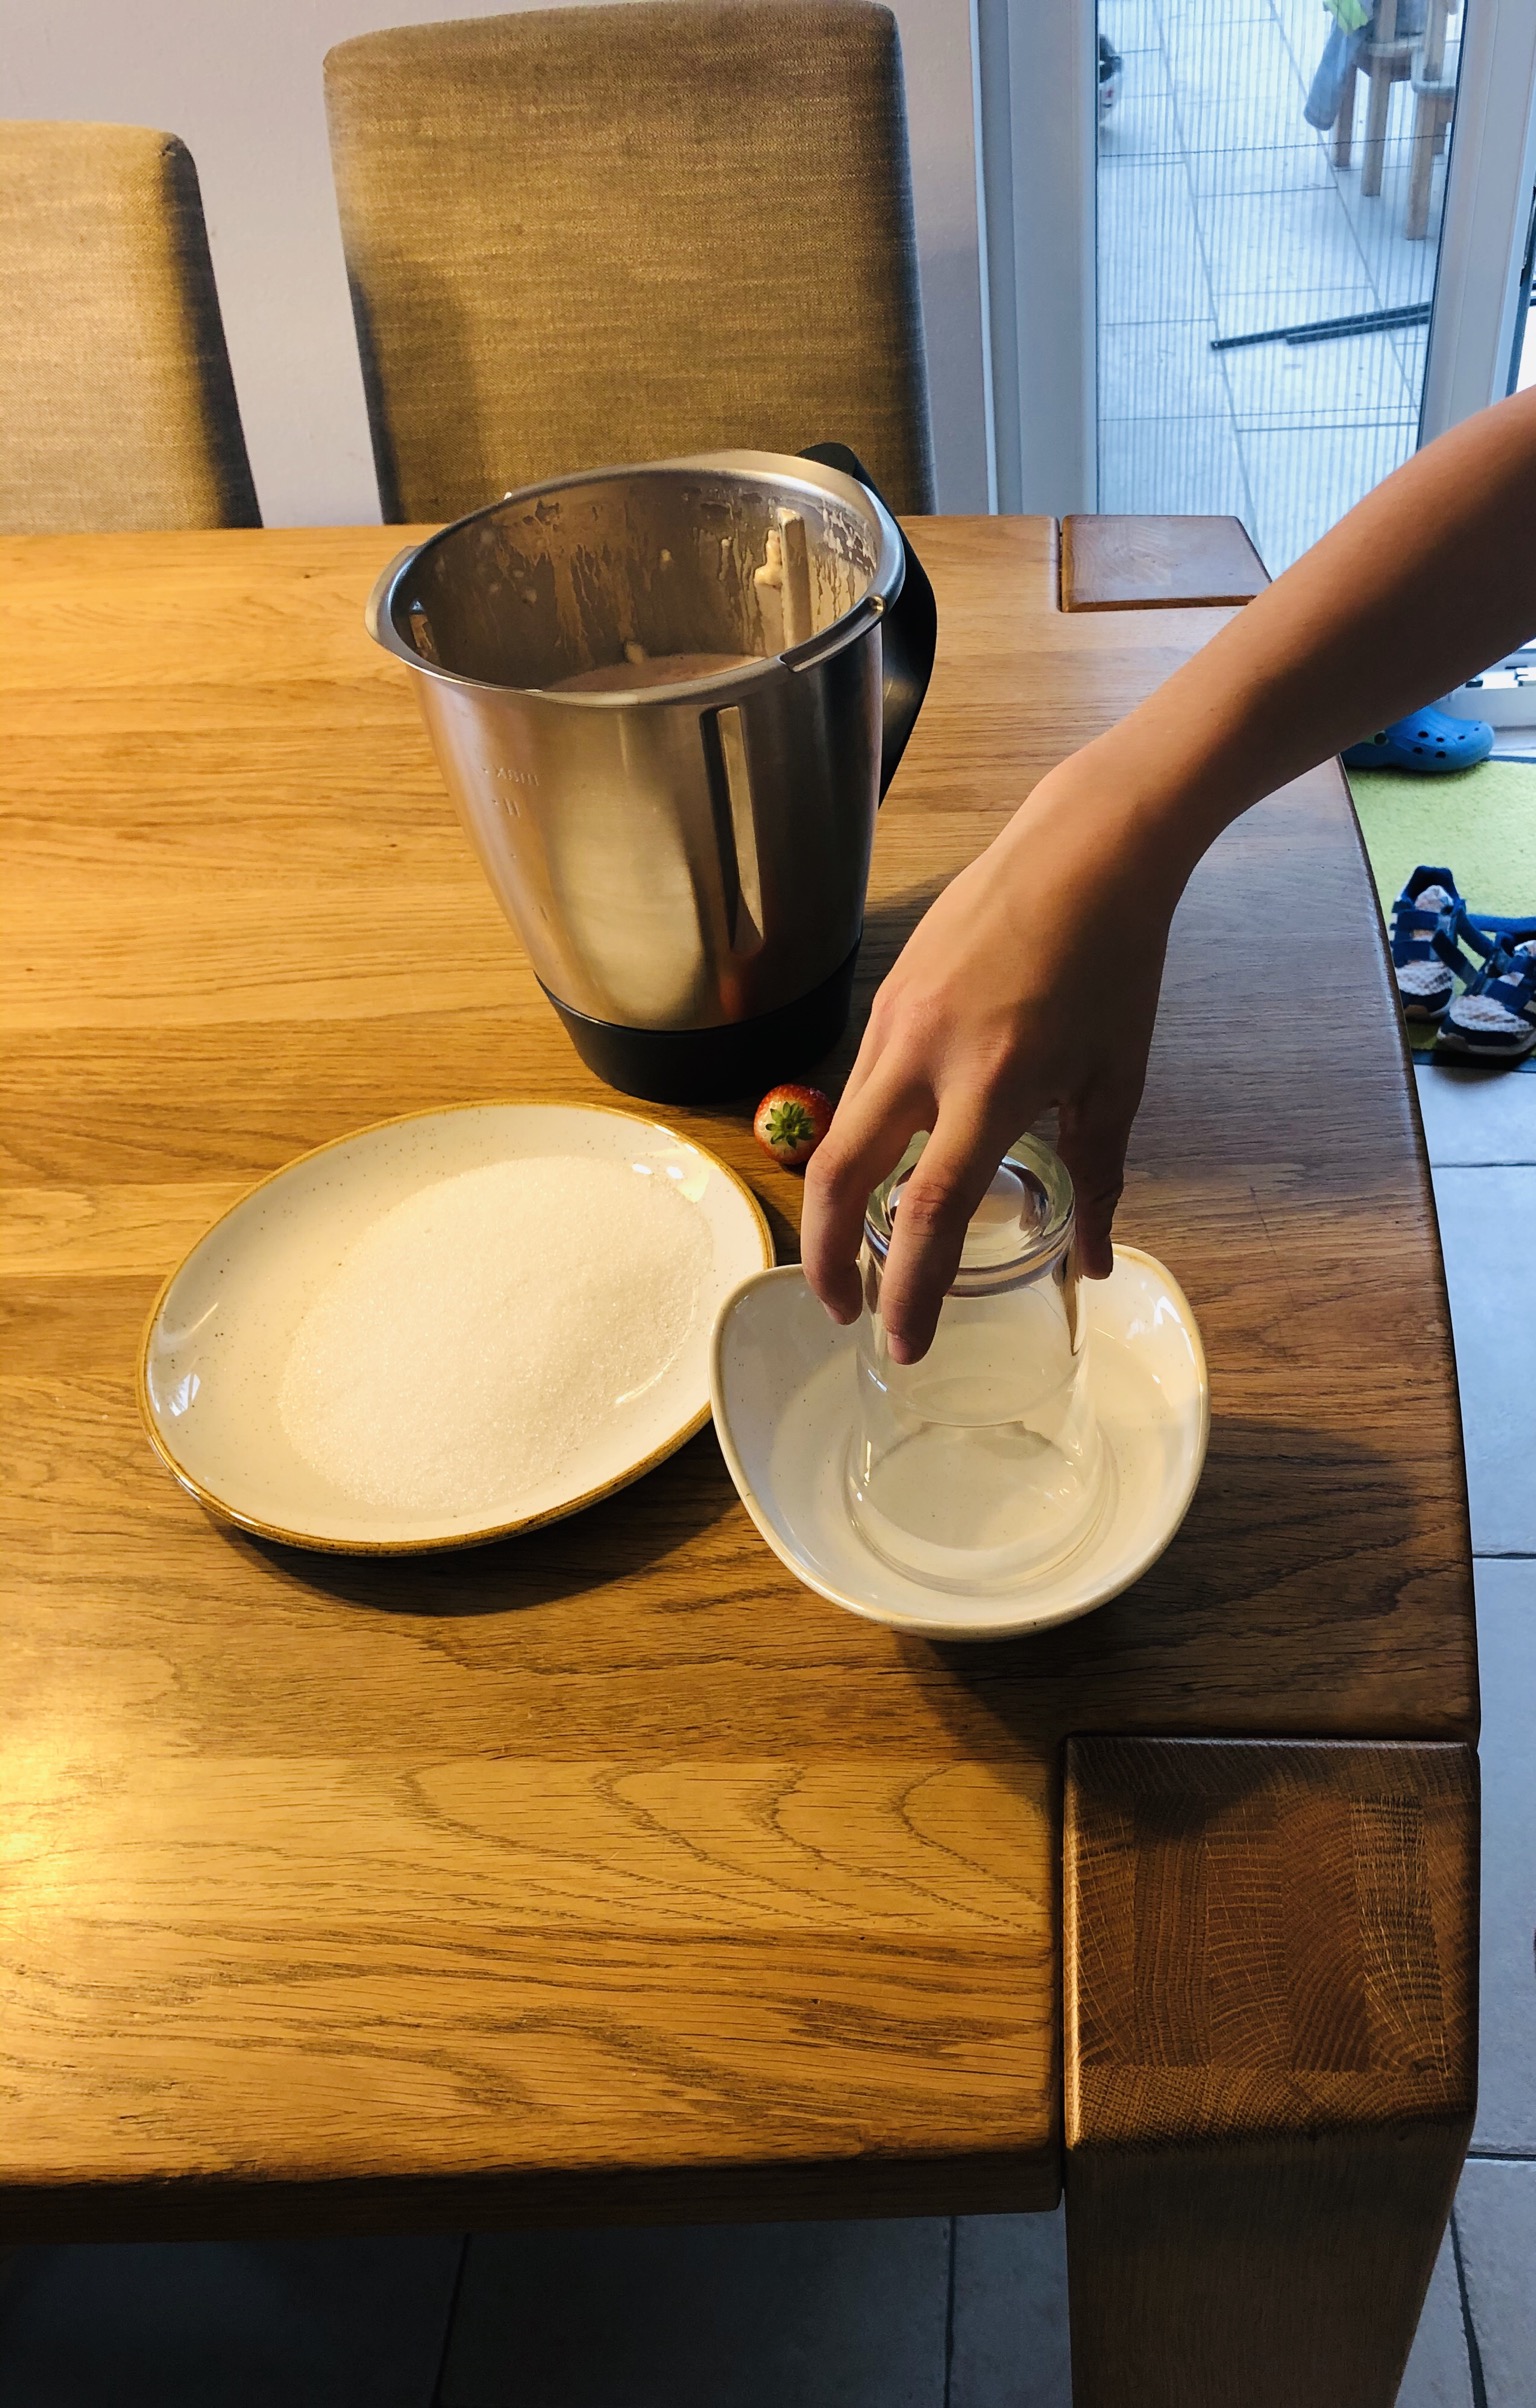 Bild zum Schritt 8 für die Kinder-Beschäftigung: 'Glasrand  zuerst in Wasser tauchen.   Variante: in...'